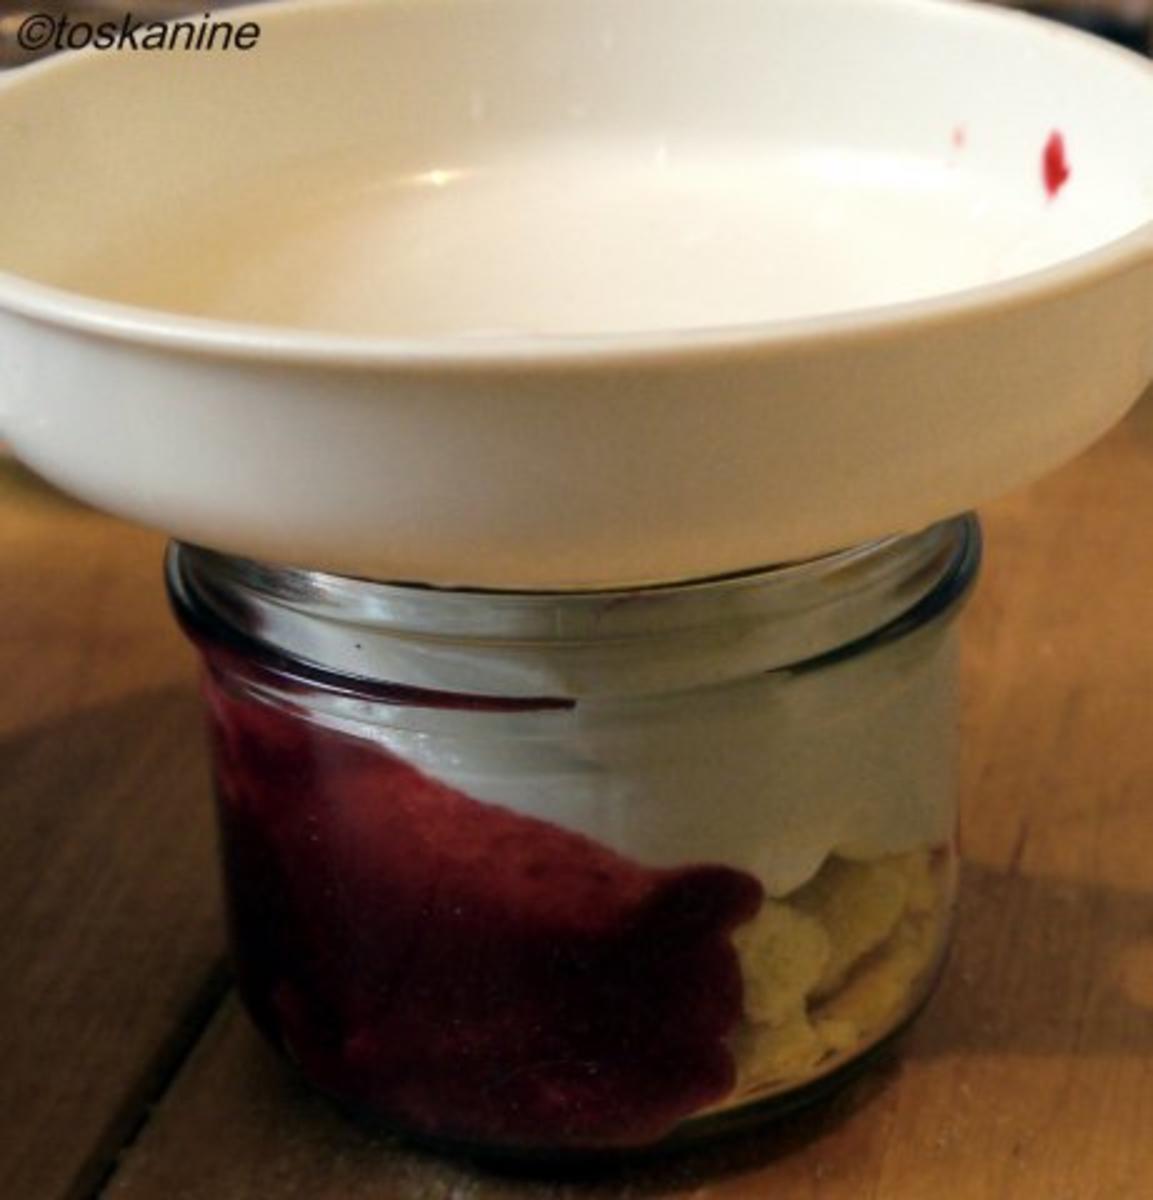 Veilchen-Joghurt auf beschwipsten Himbeeren - Rezept - Bild Nr. 8